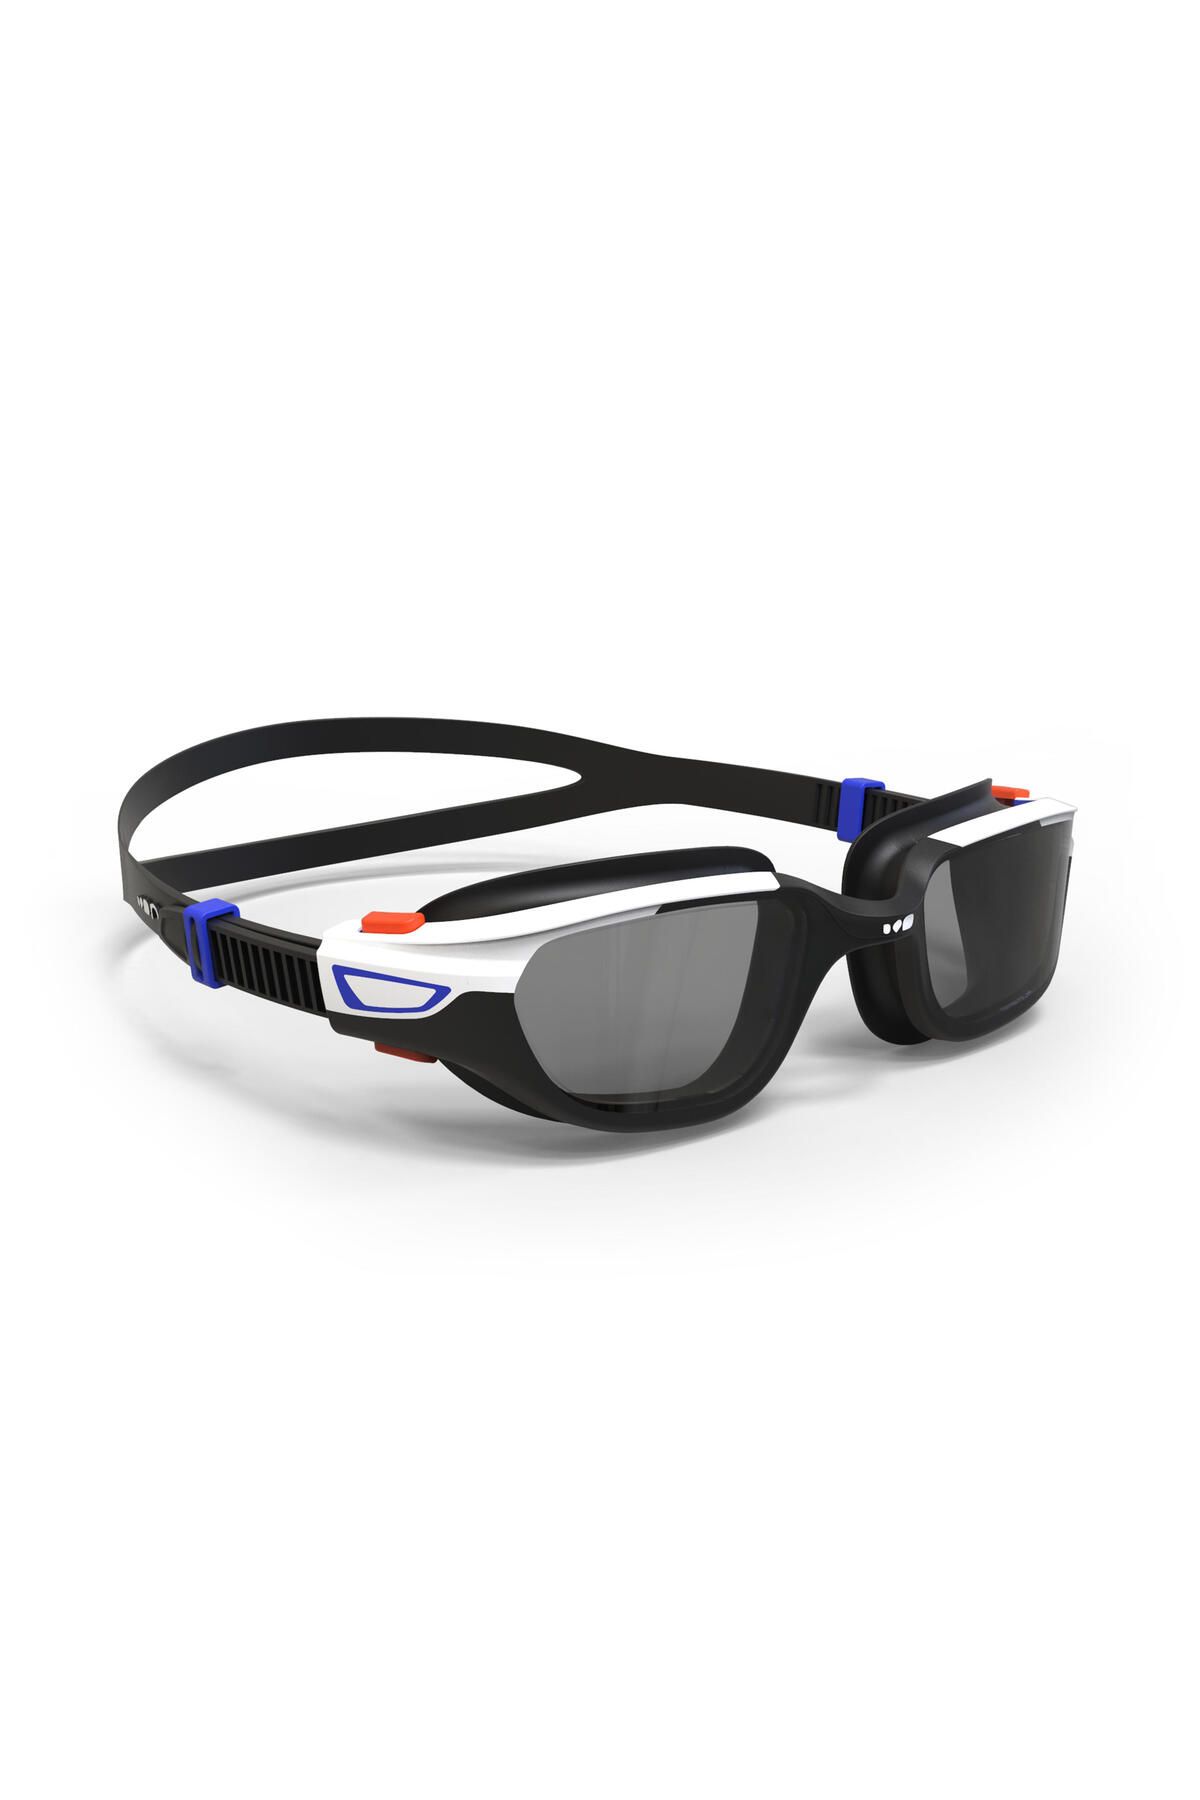 Decathlon - Deniz Havuz Dalış Yüzme Gözlüğü Profesyonel Yüzücü Gözlüğü Beyaz Siyah L Boy Unisex